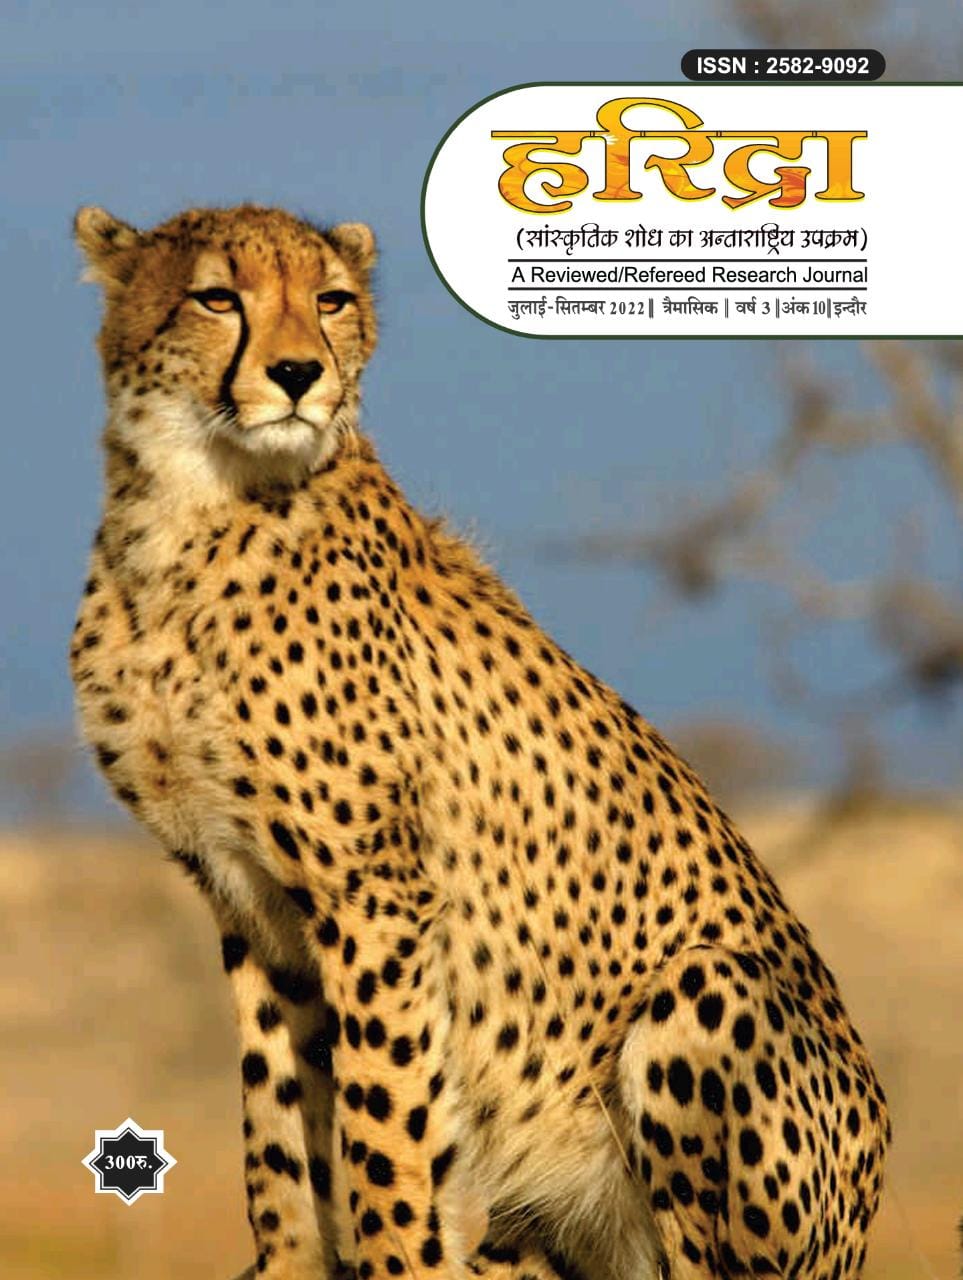 Cheetah reintroduced at Kuno national park , India